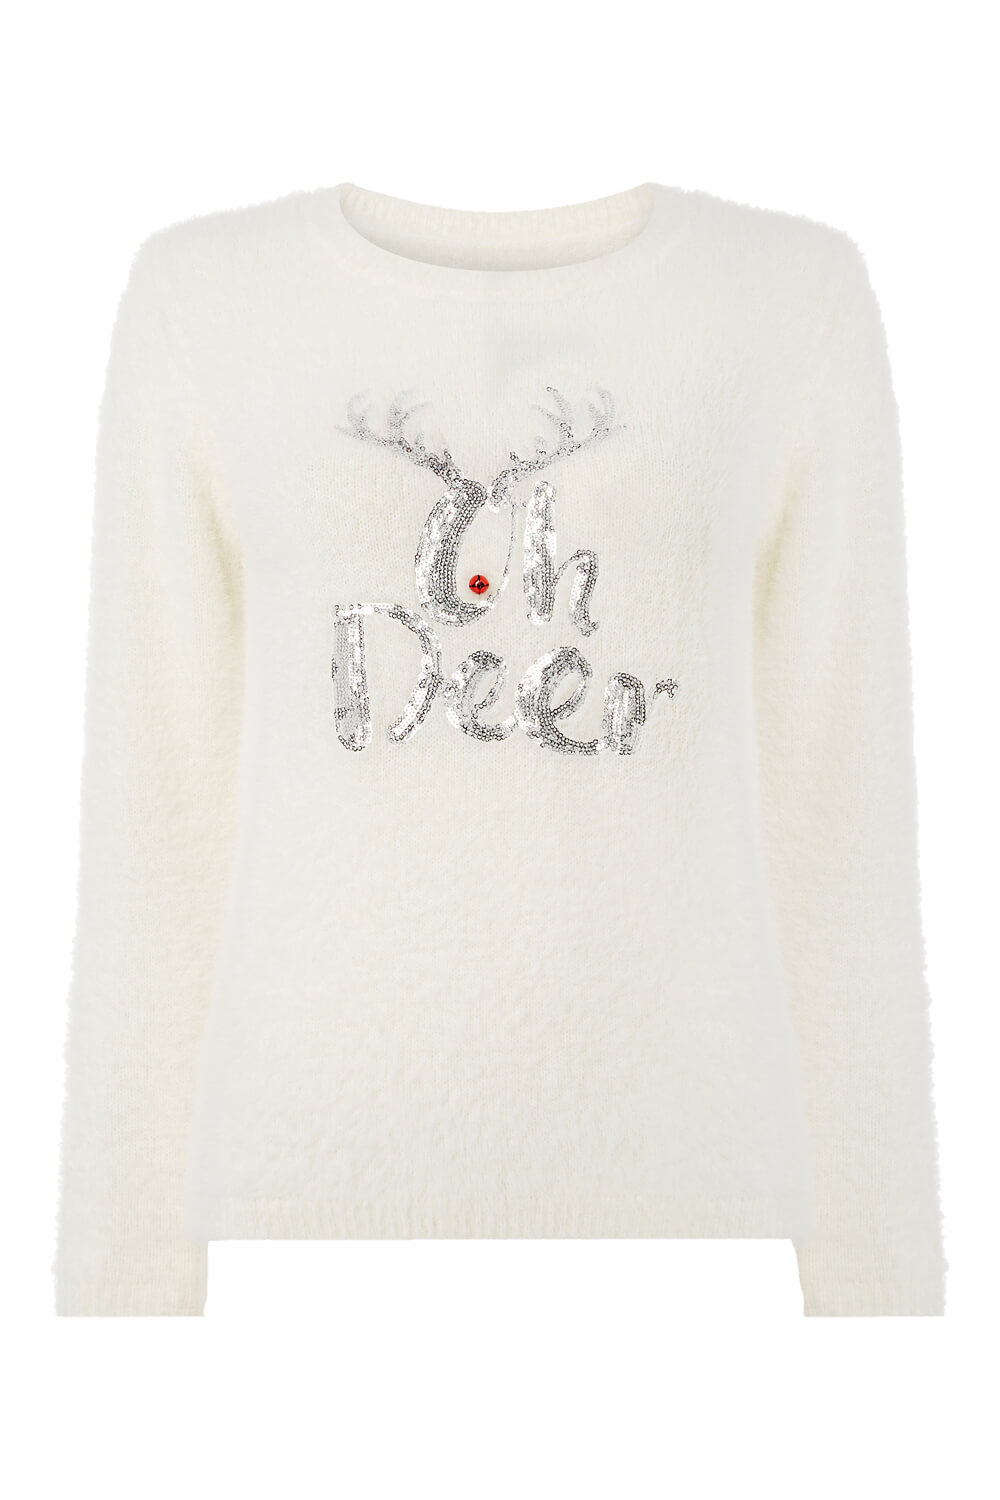 Ivory  Oh Deer Embellished Christmas Jumper, Image 5 of 5